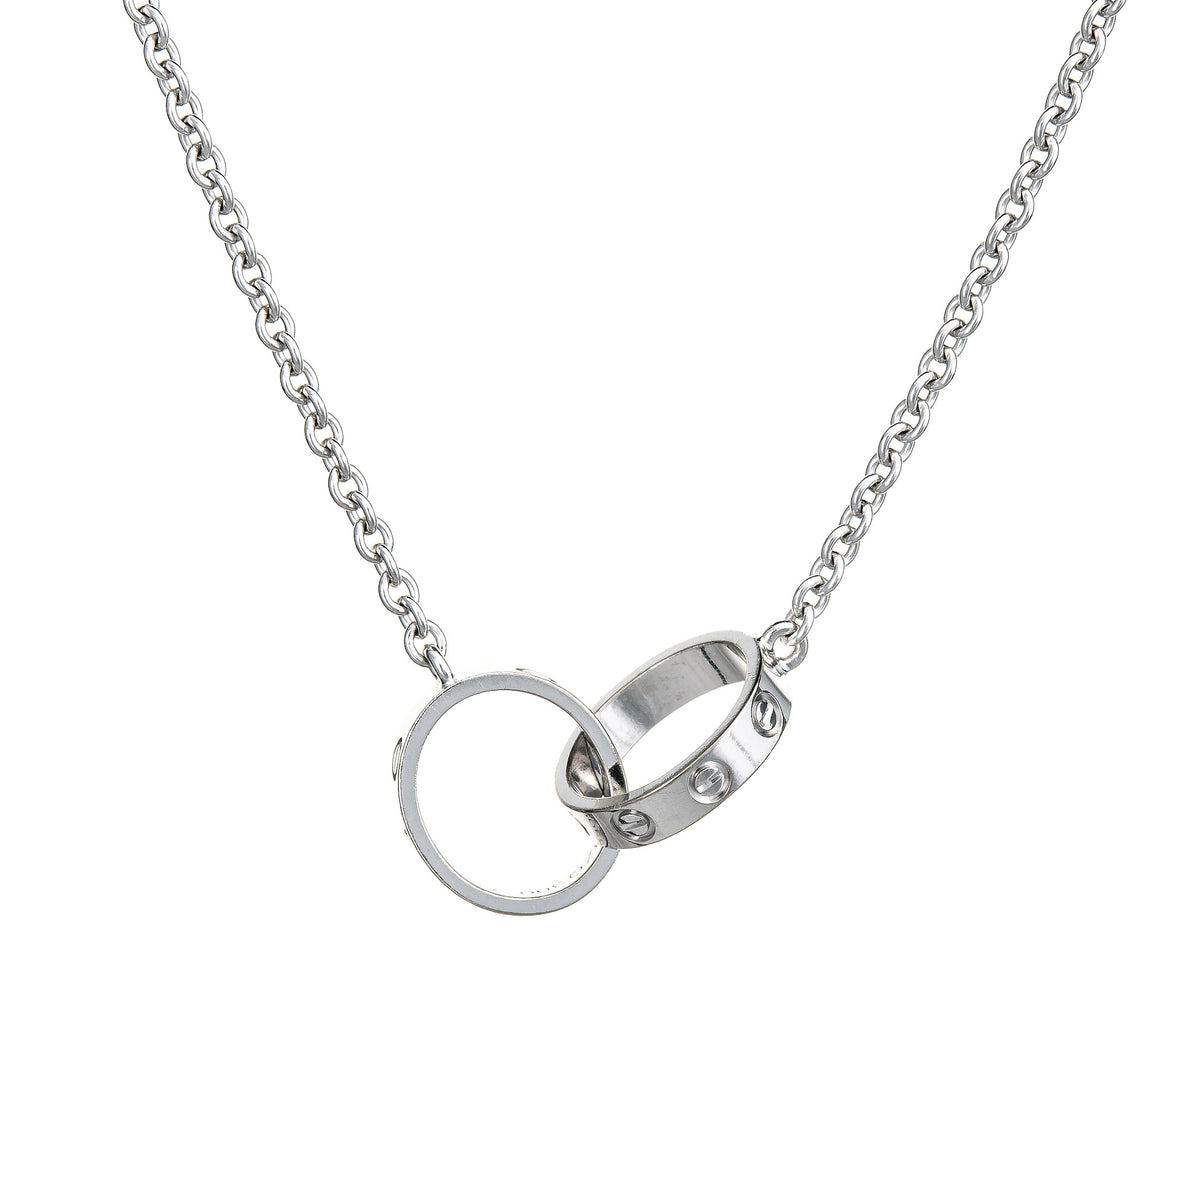 Cartier Love Necklace Interlocking 18k White Gold Estate Fine Jewelry Sophie Jane